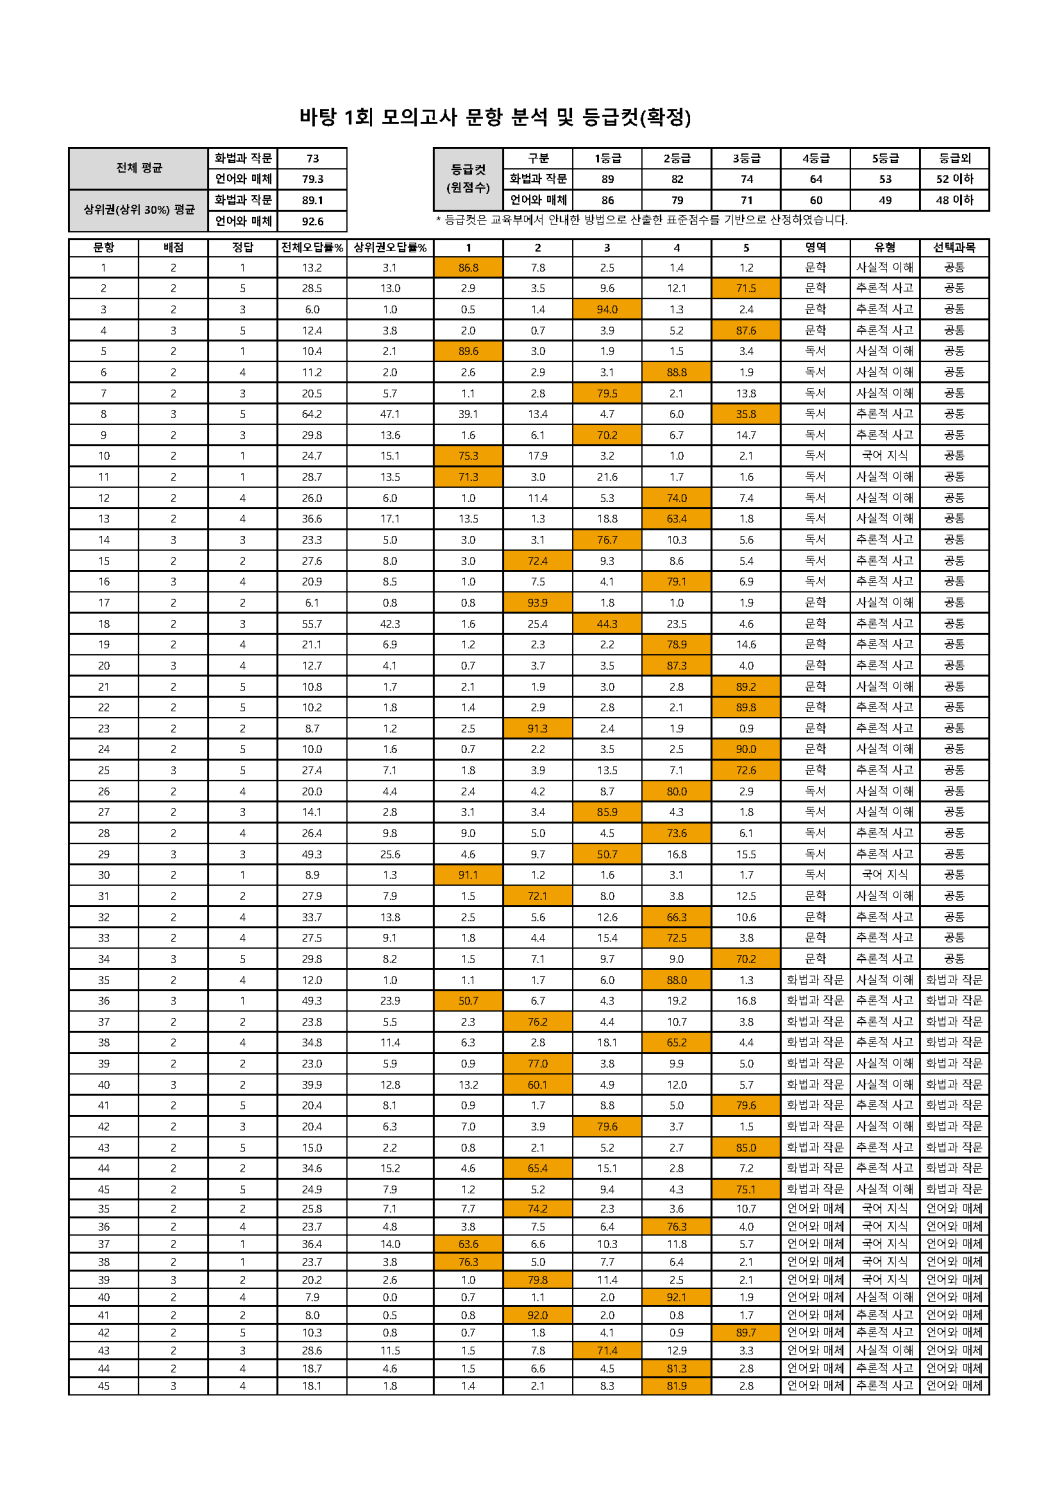 2022학년도 바탕 문항분석표 및 등급컷(1회~10회)_페이지_01.png